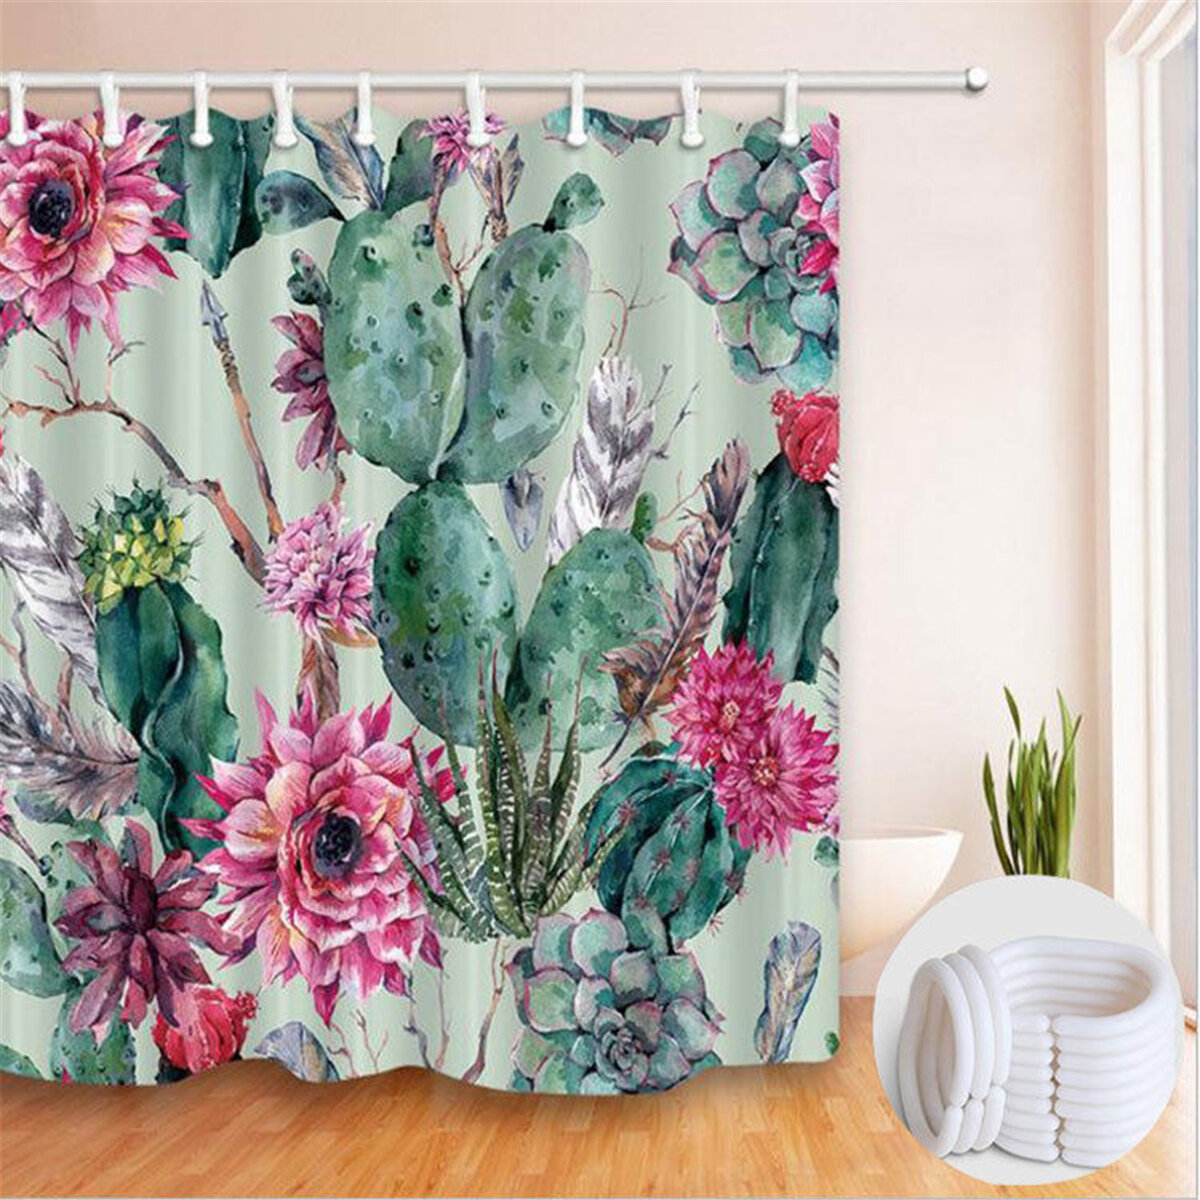 

180*180cm Modren Cactus Bathroom Curtains